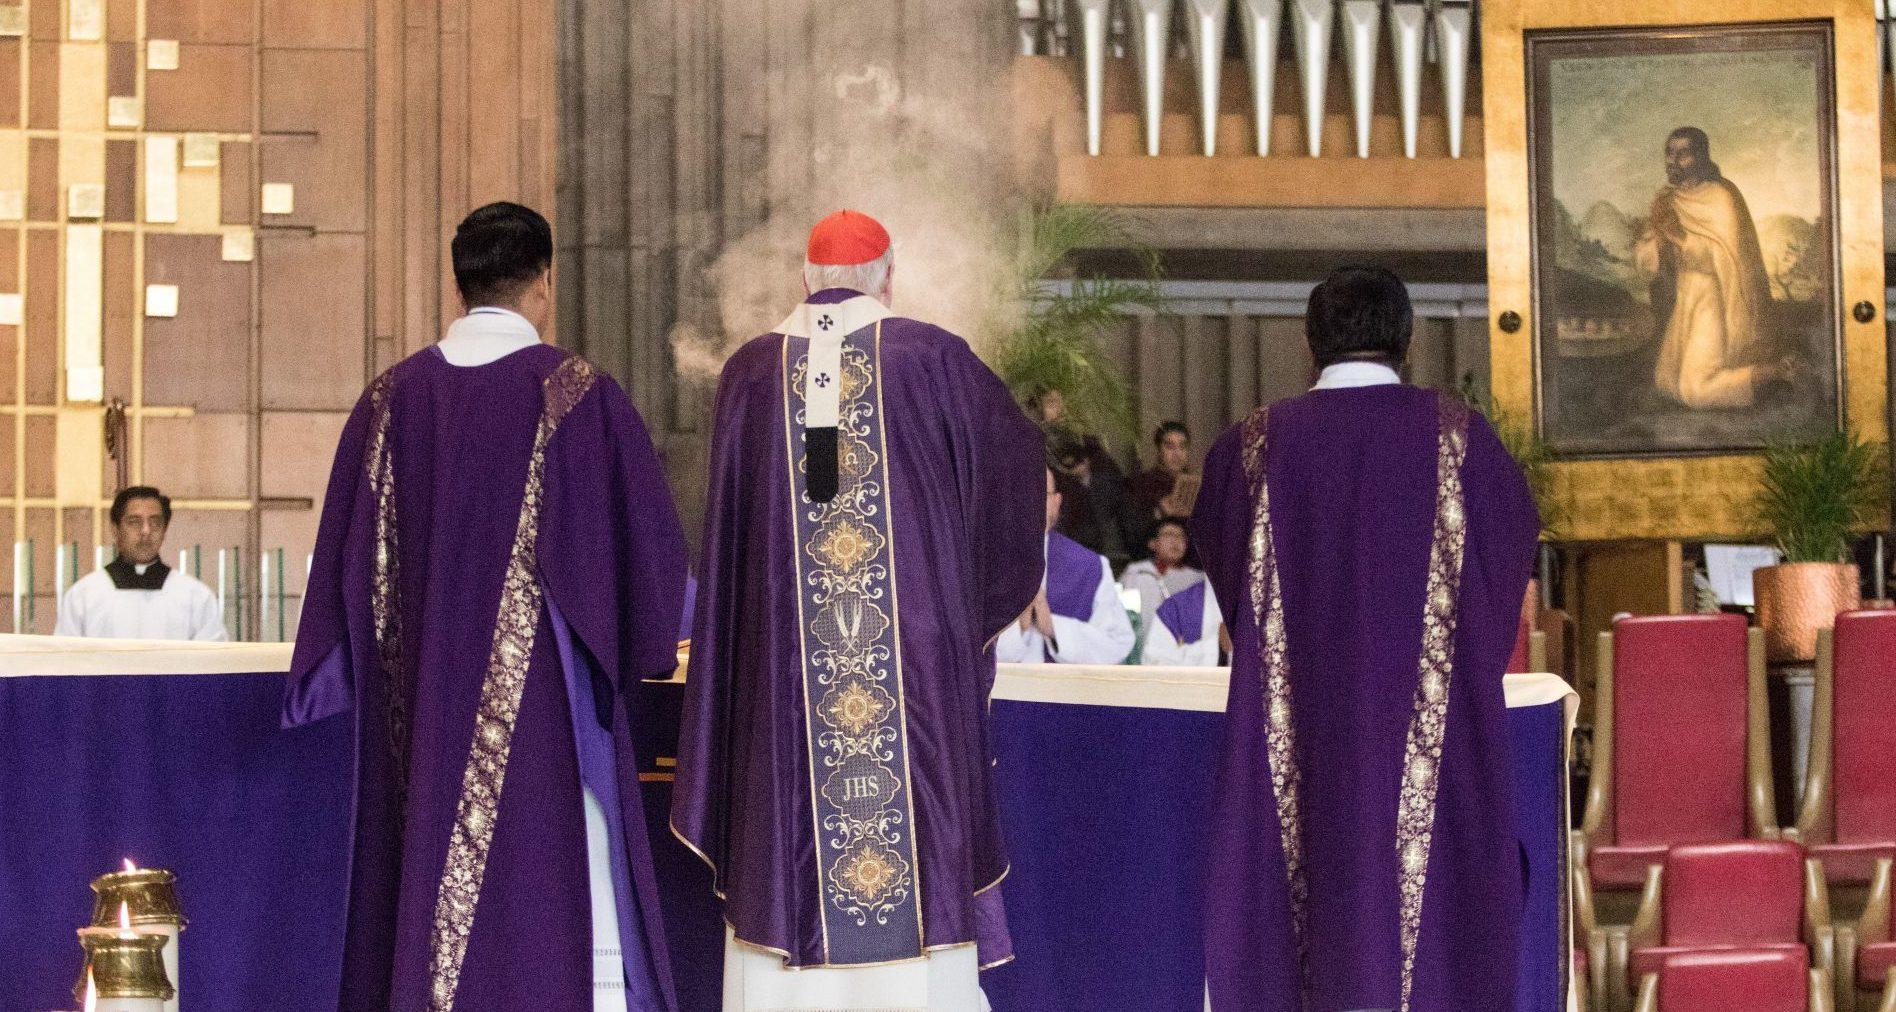 Obispos piden suspender misas dominicales y transmitirlas por internet y medios